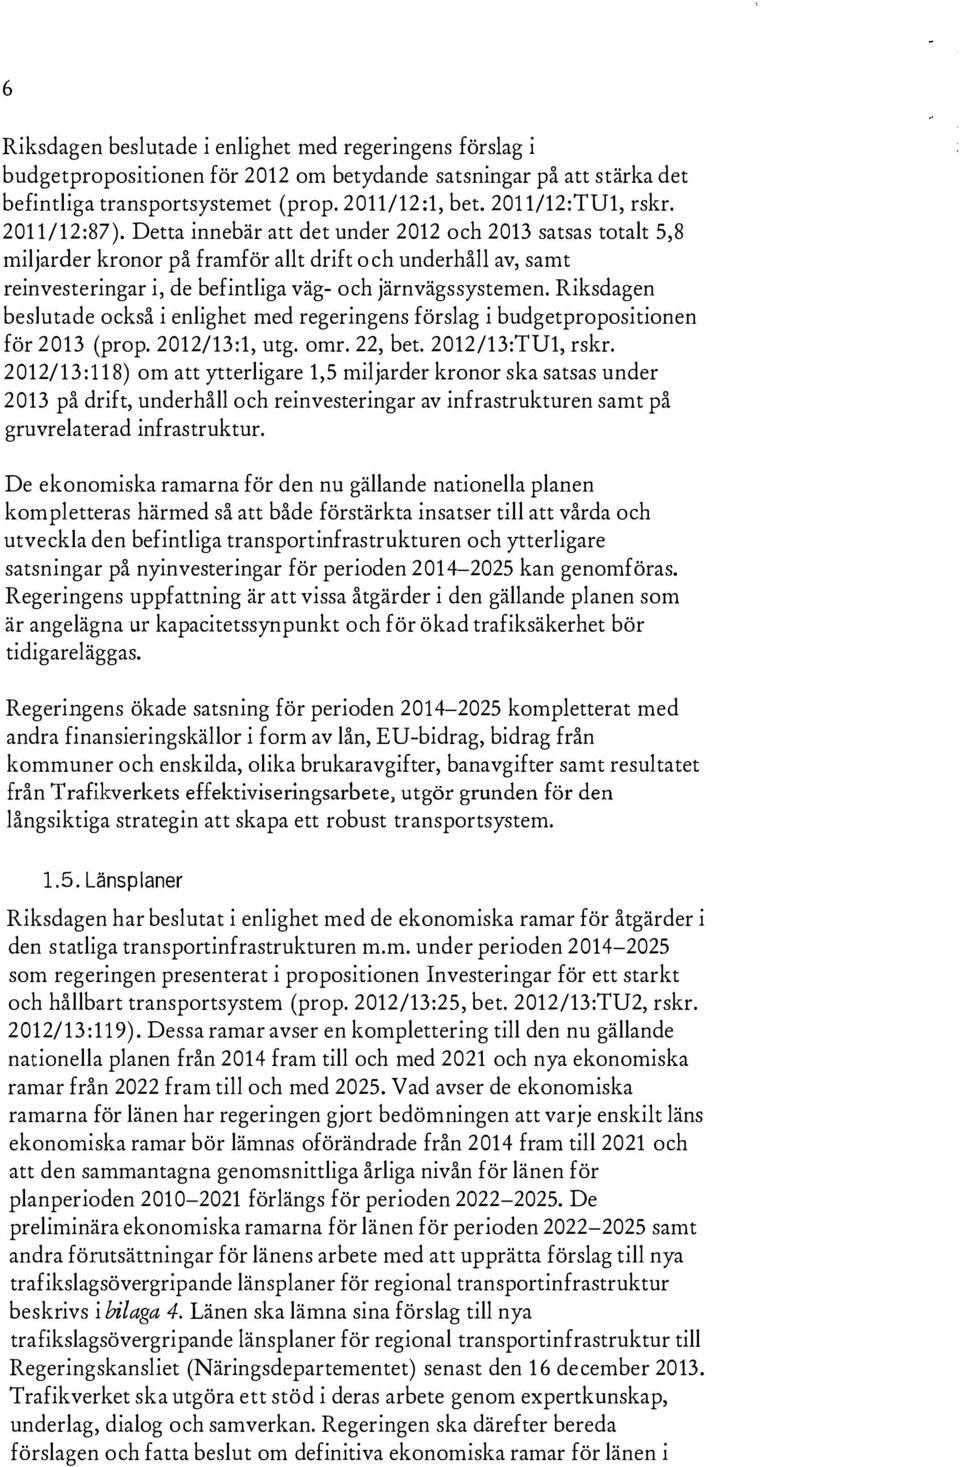 Riksdagen beslutade också i enlighet med regeringens förslag i budgetpropositionen för 2013 (prop. 2012/13:1, utg. omr. 22, bet. 2012/13:TU1, rskr.